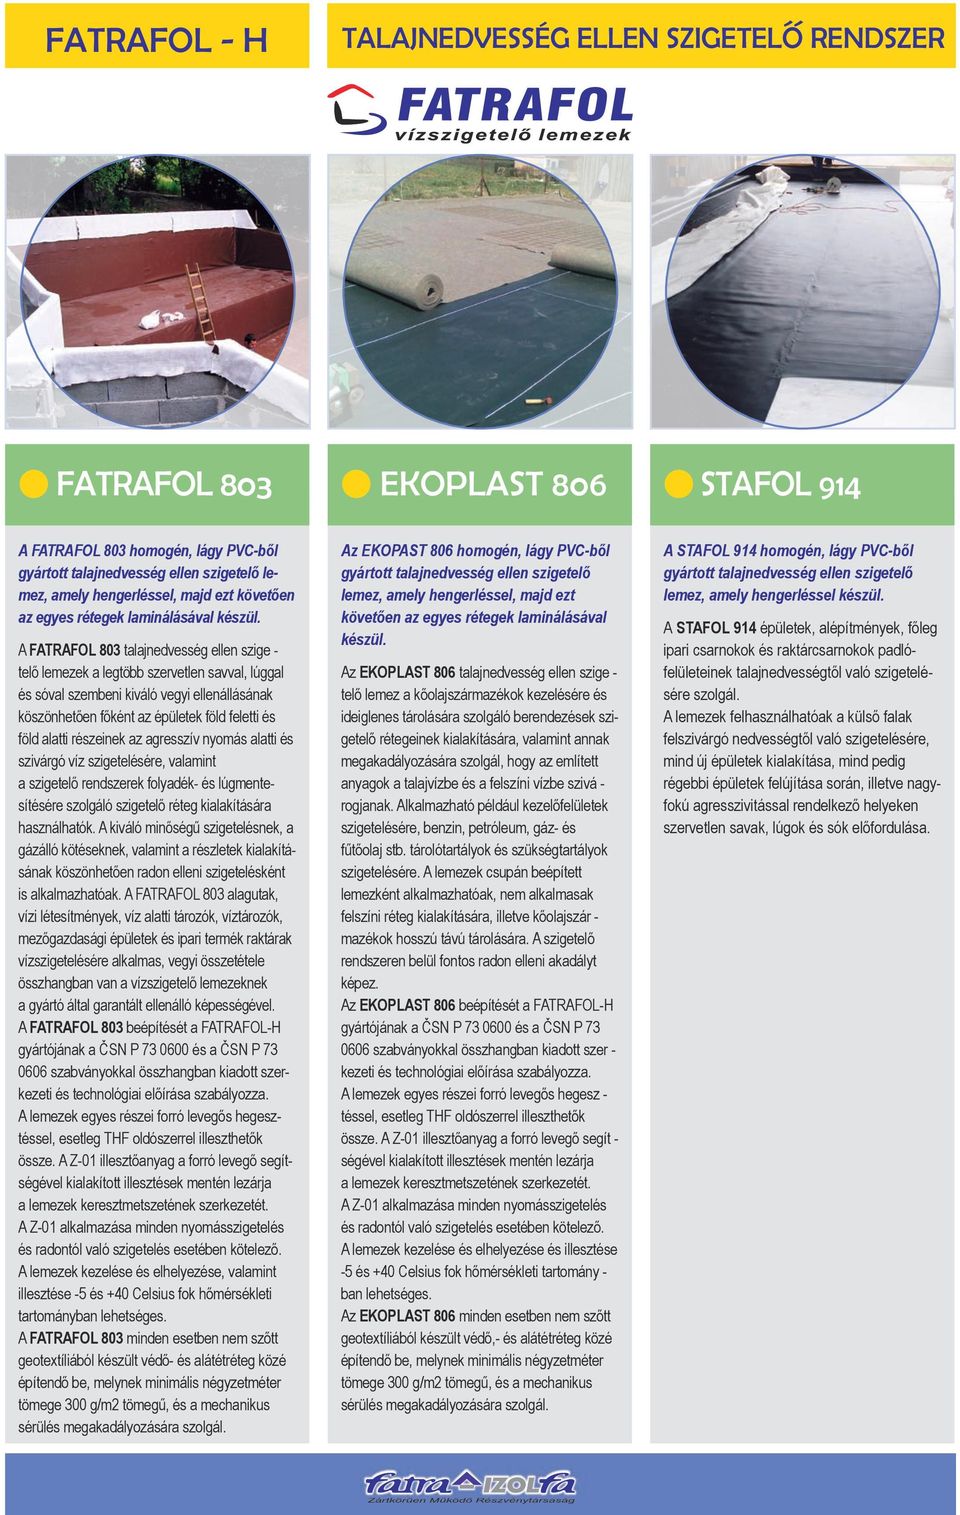 A FATRAFOL 803 talajnedvesség ellen szige - telő lemezek a legtöbb szervetlen savval, lúggal és sóval szembeni kiváló vegyi ellenállásának köszönhetően főként az épületek föld feletti és föld alatti